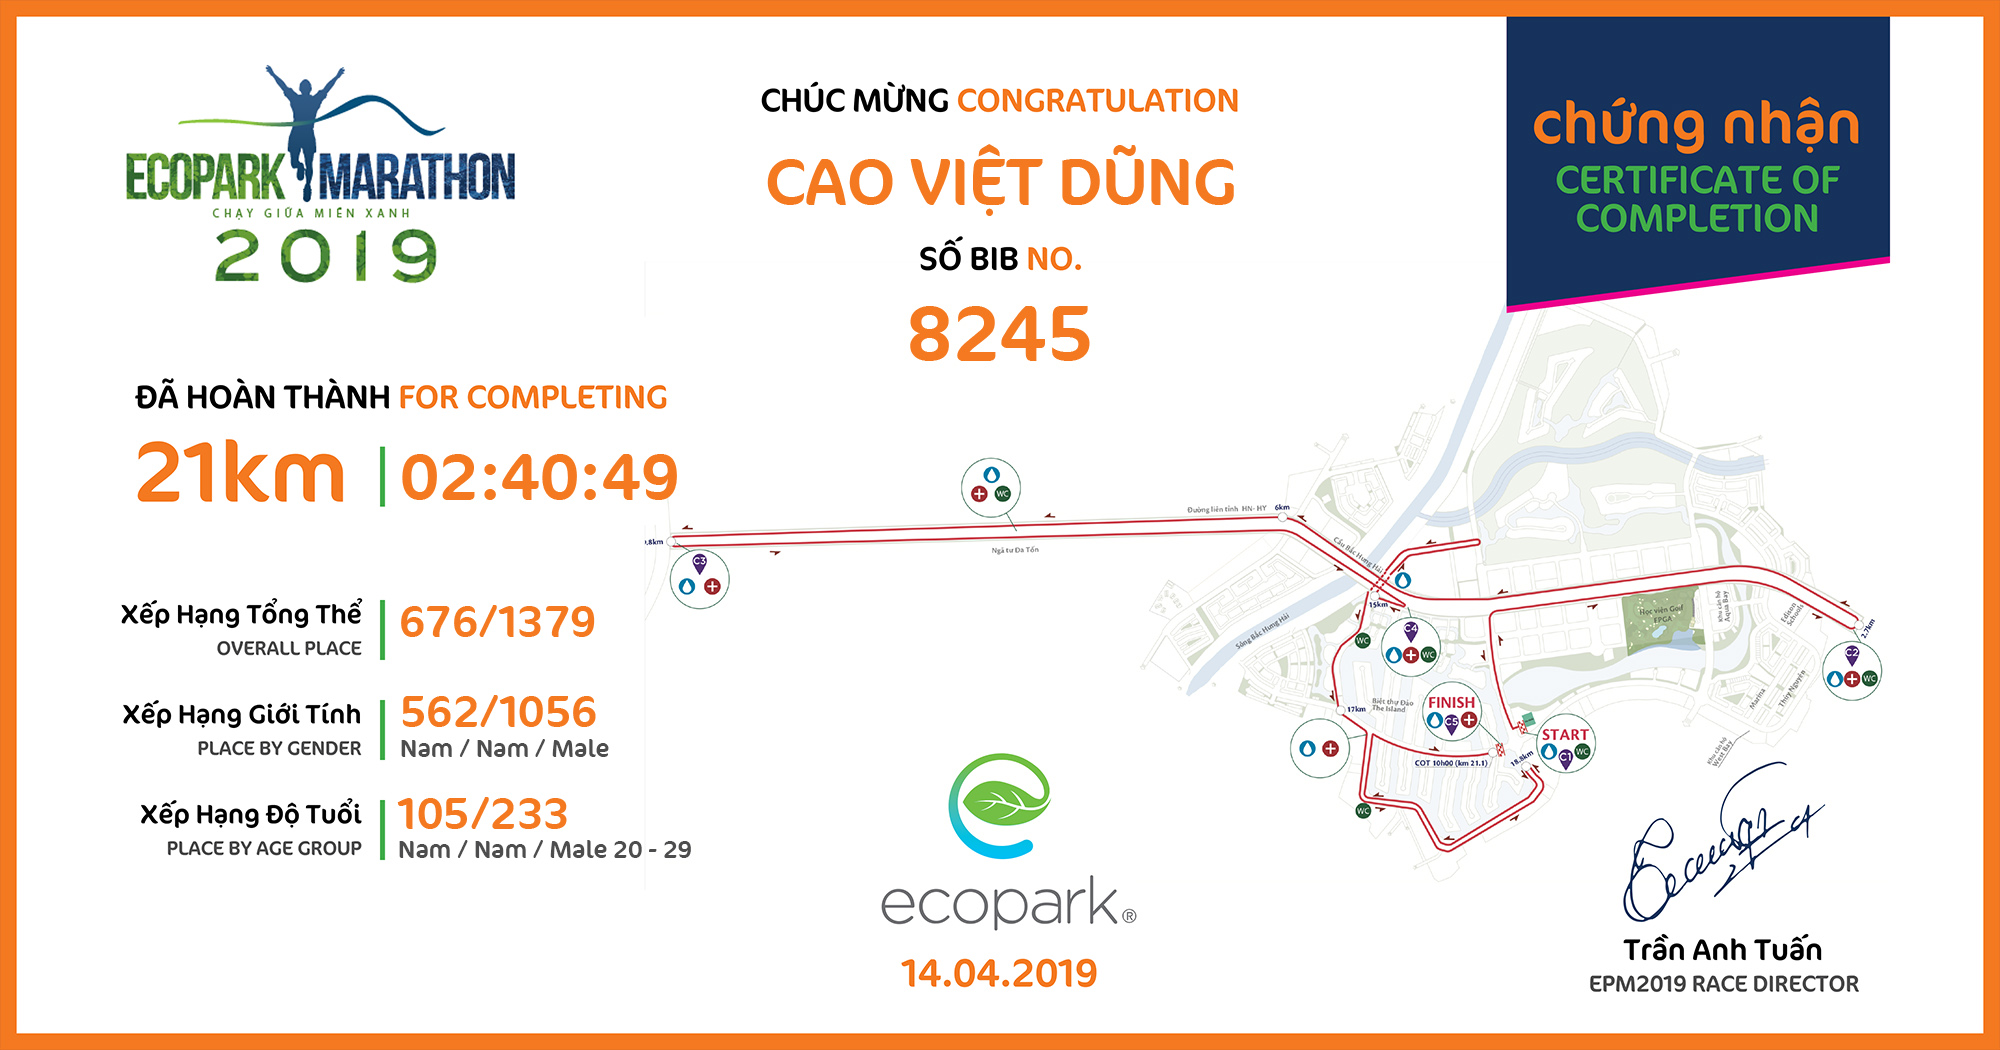 8245 - Cao Việt Dũng